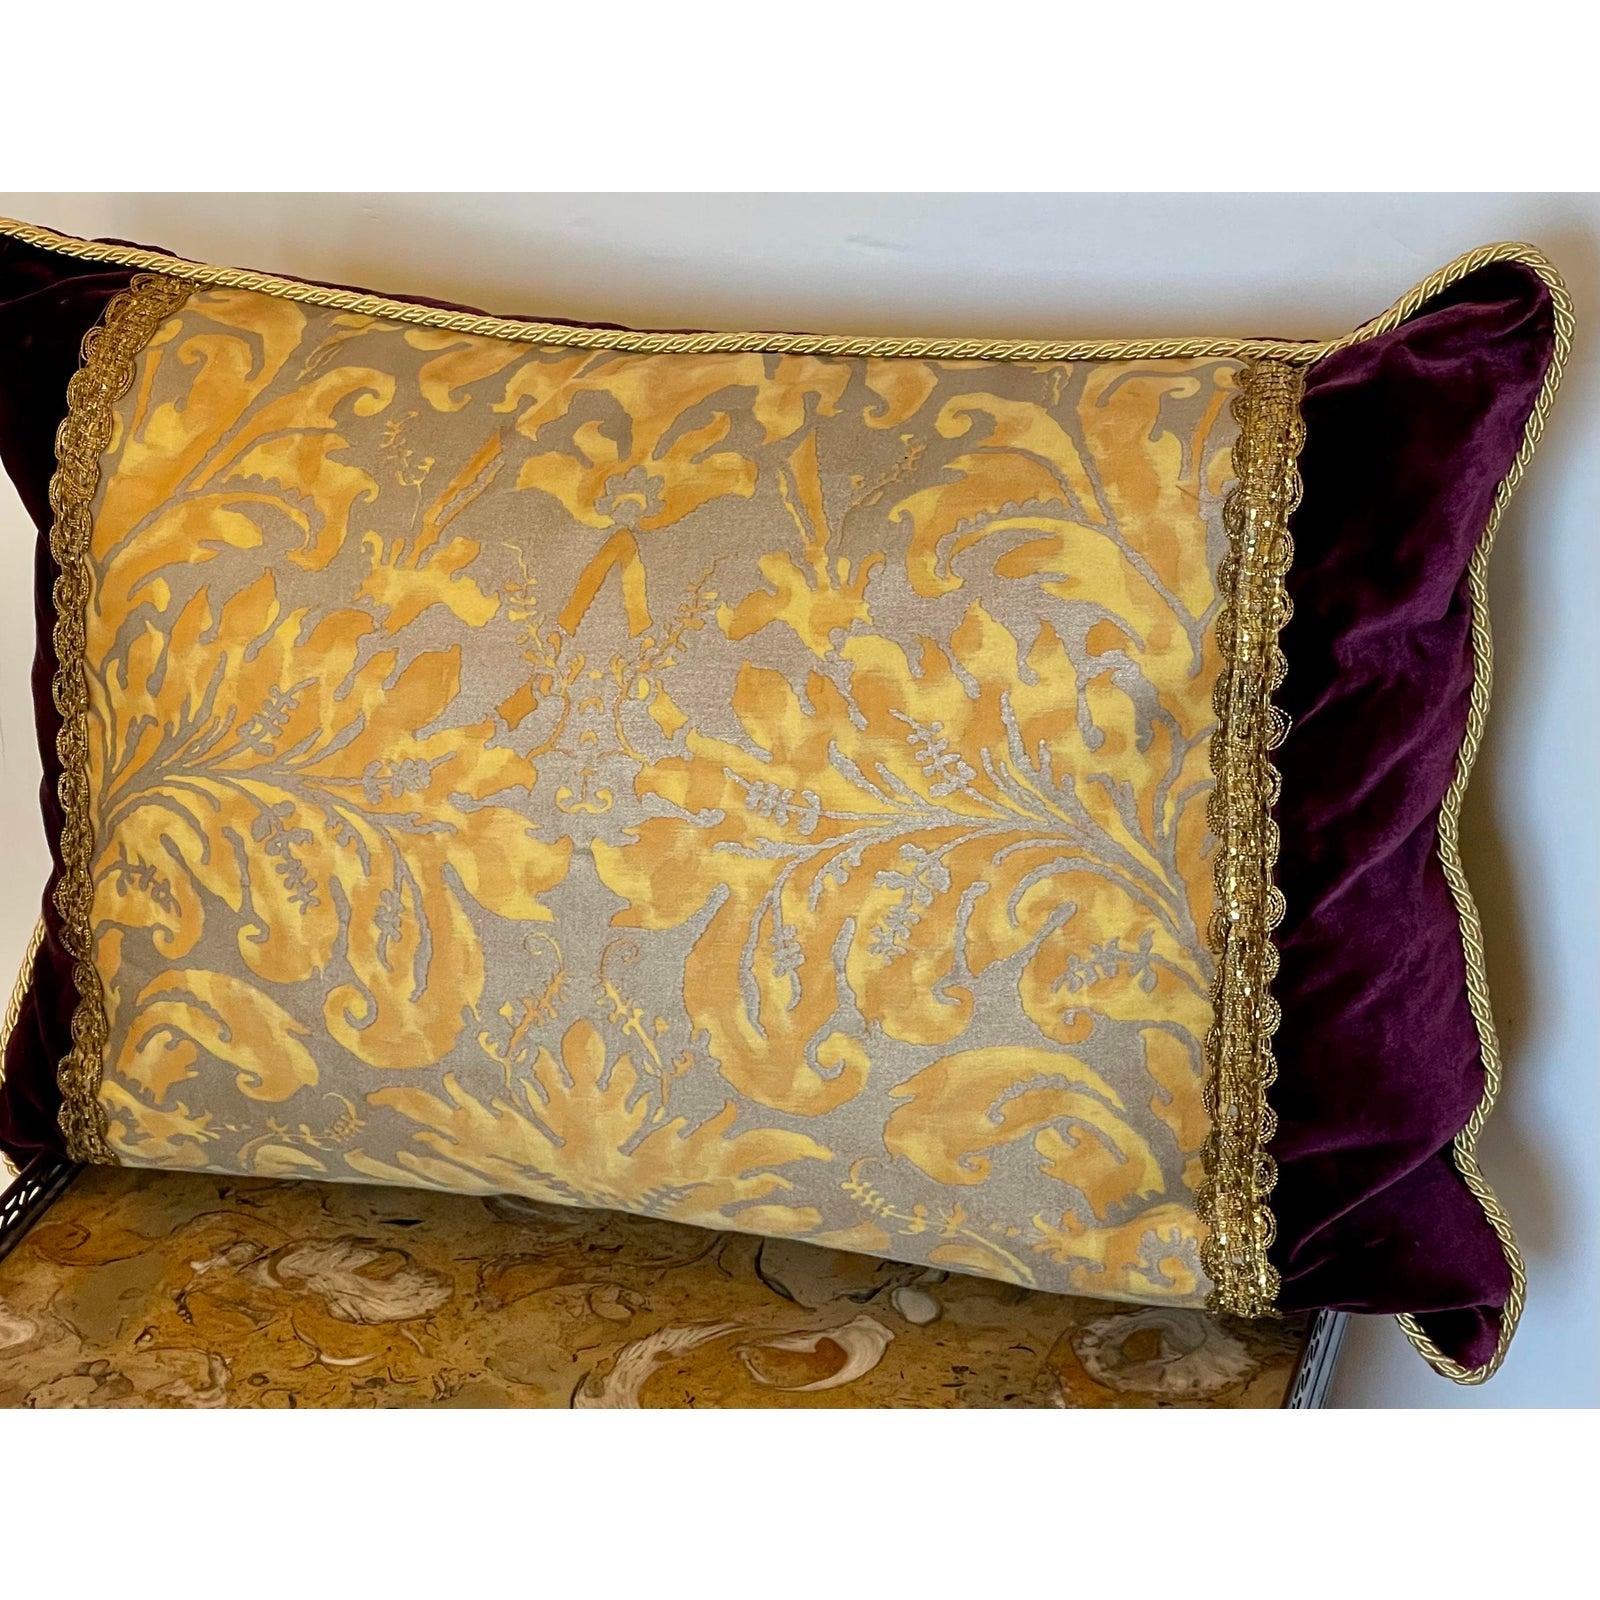 Vintage Fortuny Down Filled Silk Velvet Throw Pillow. Mit Goldmetallic-Besatz.

Zusätzliche Informationen:
MATERIALIEN: Seide, Samt
Farbe: Lila
Designer: Fortuny
Zeitraum: 2000 - 2009
Muster: Damast
Stilrichtungen: Französisch, Italienisch,